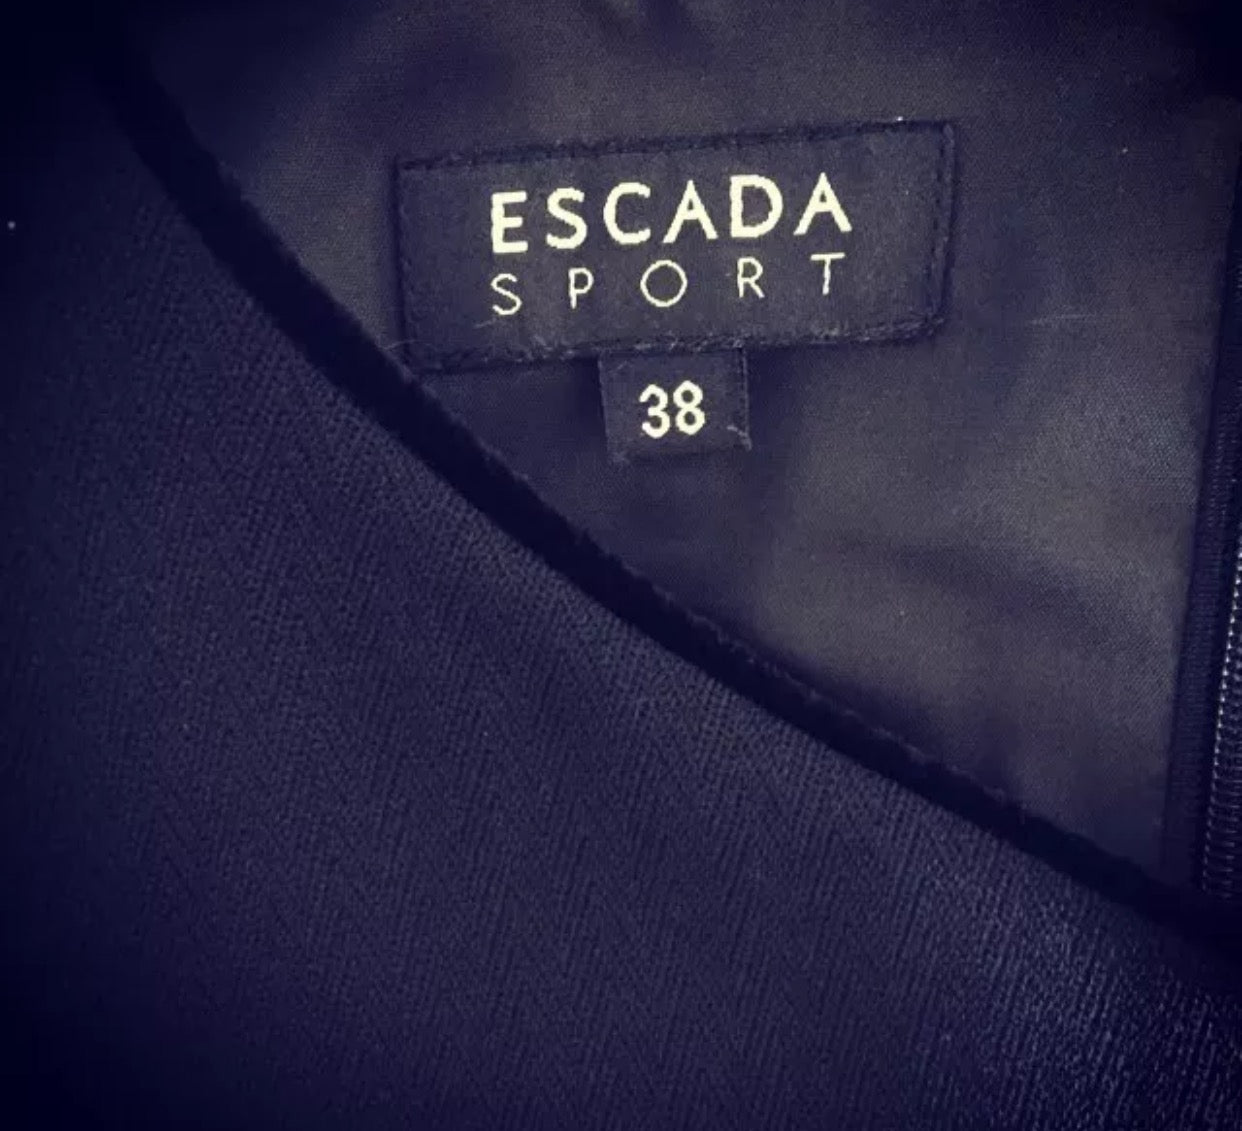 Escada Sport Dress – Vanity's Vault